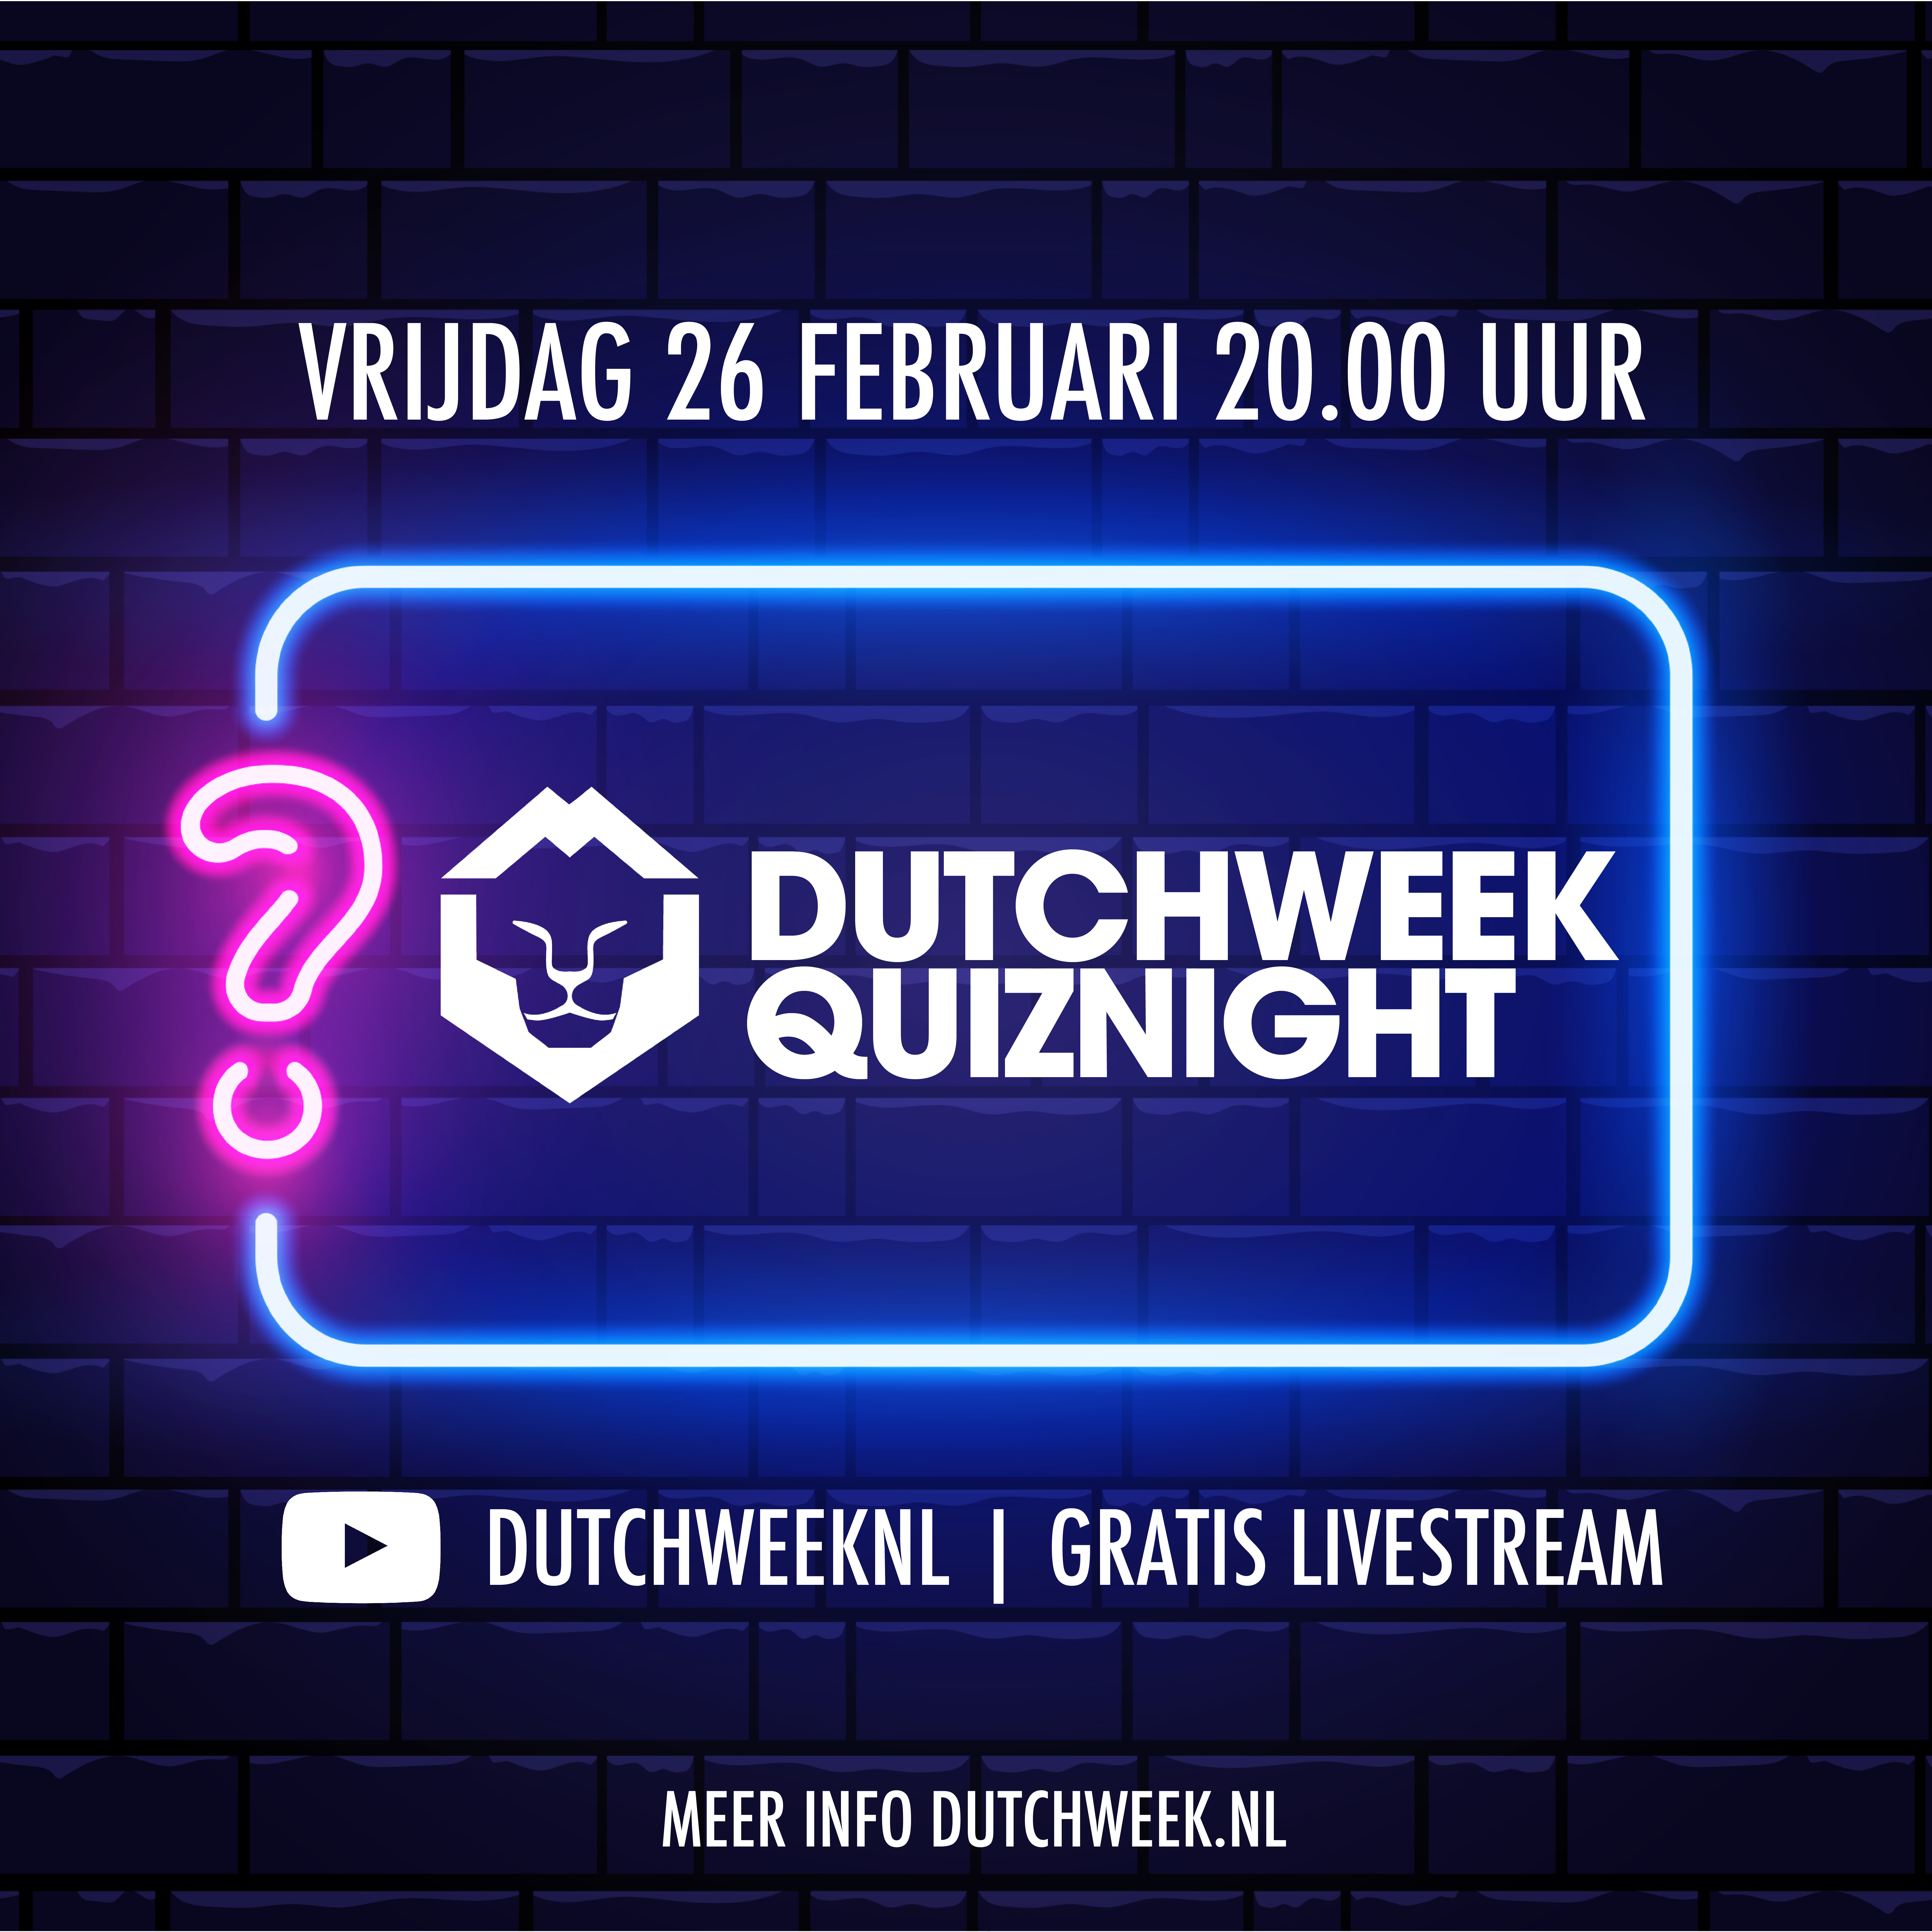 Dutchweek Quiznight!